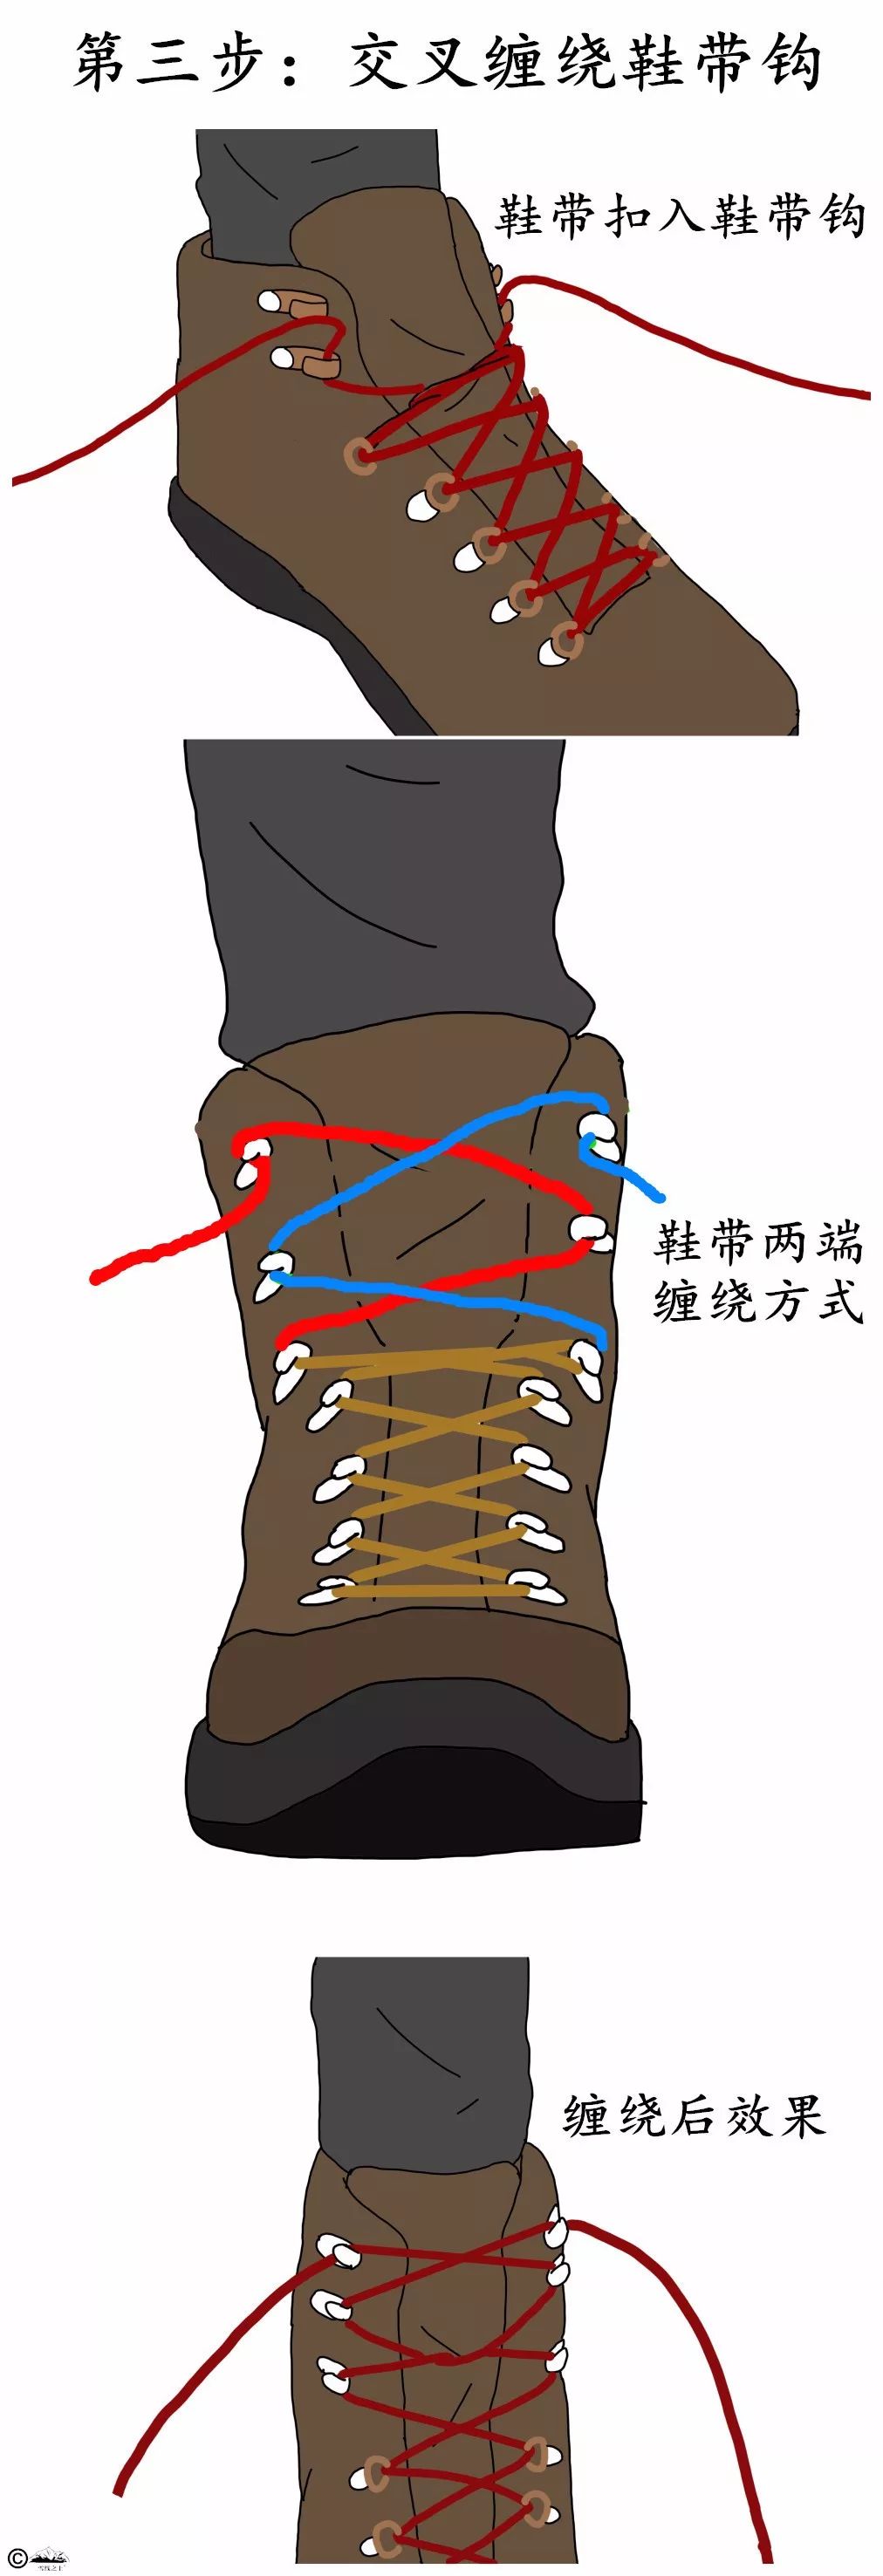 这样鞋带可以在最上面的两个鞋带钩上形成绳圈,防止在徒步过程中鞋带